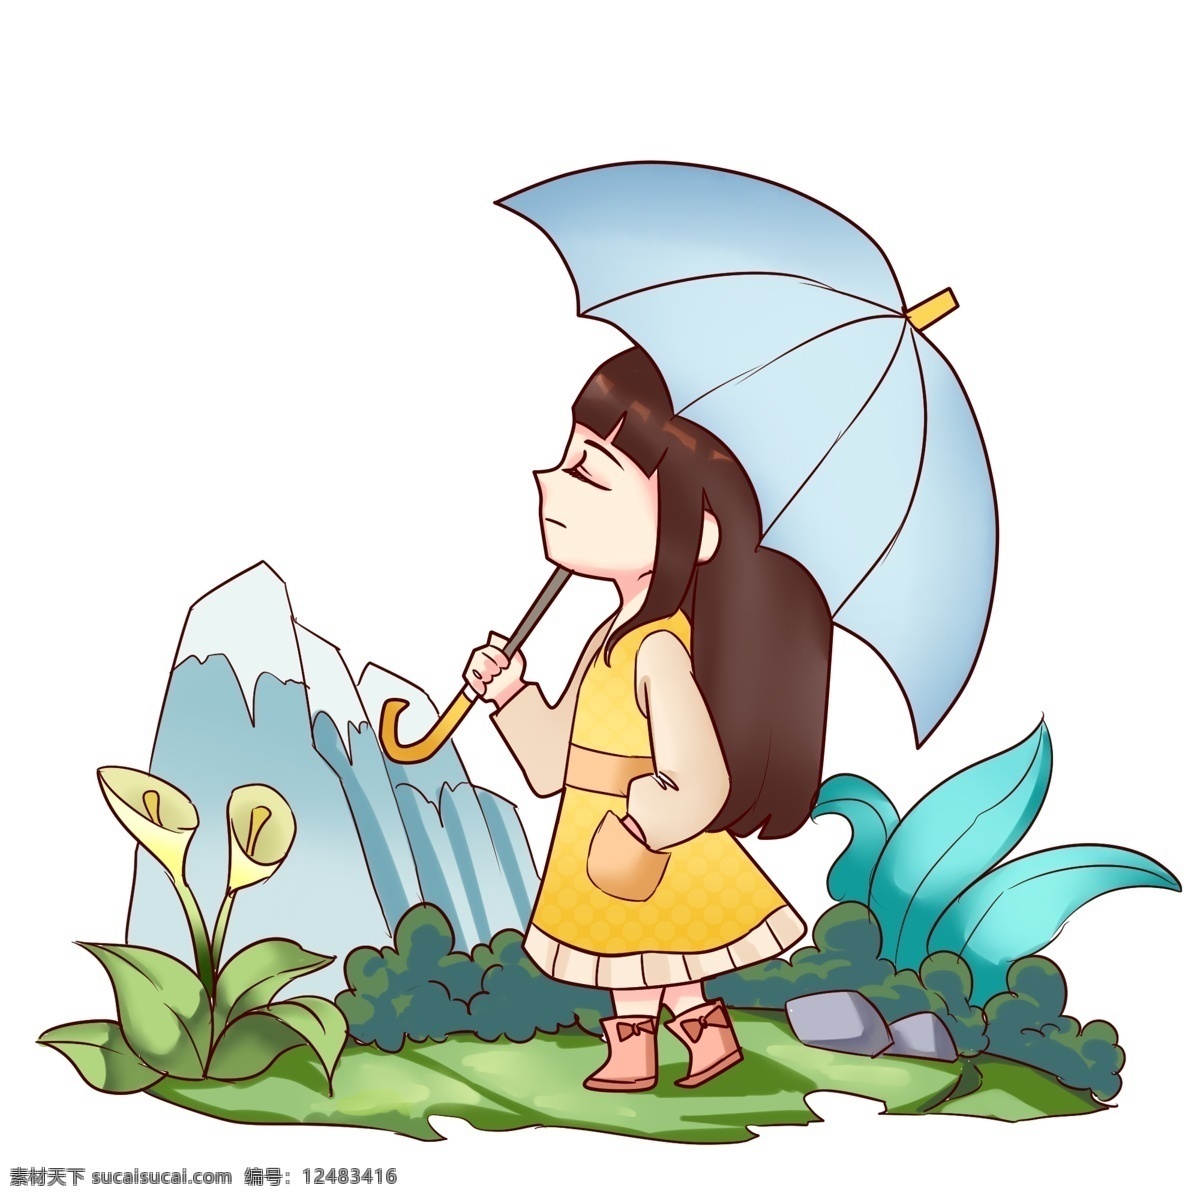 清明节 打伞 小女孩 人物 插画 打伞的小女孩 蓝色的雨伞 蓝色的叶子 植物装饰 卡通人物